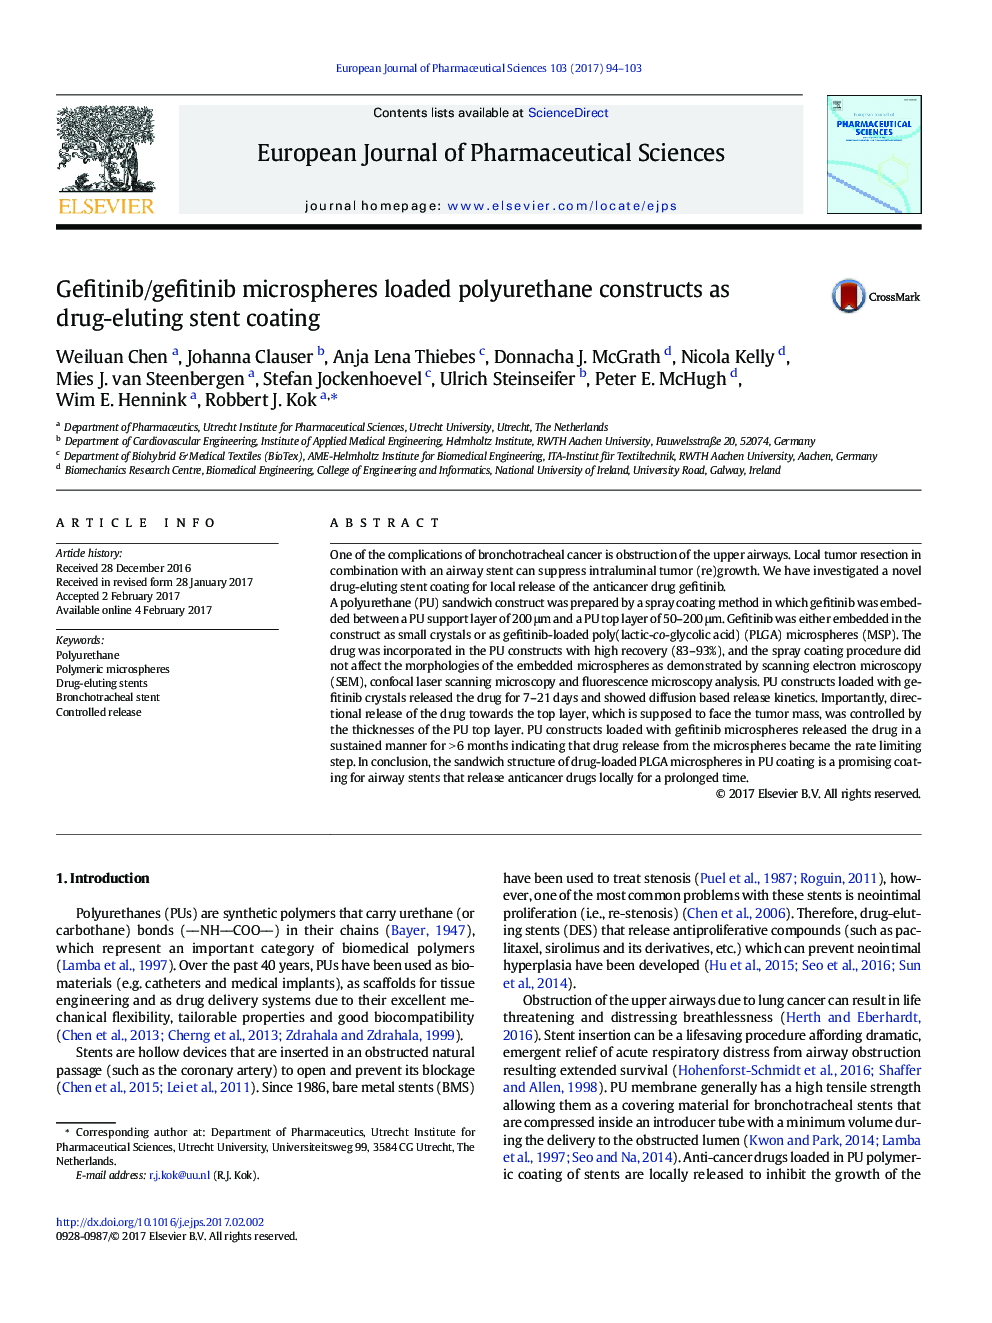 Gefitinib/gefitinib microspheres loaded polyurethane constructs as drug-eluting stent coating